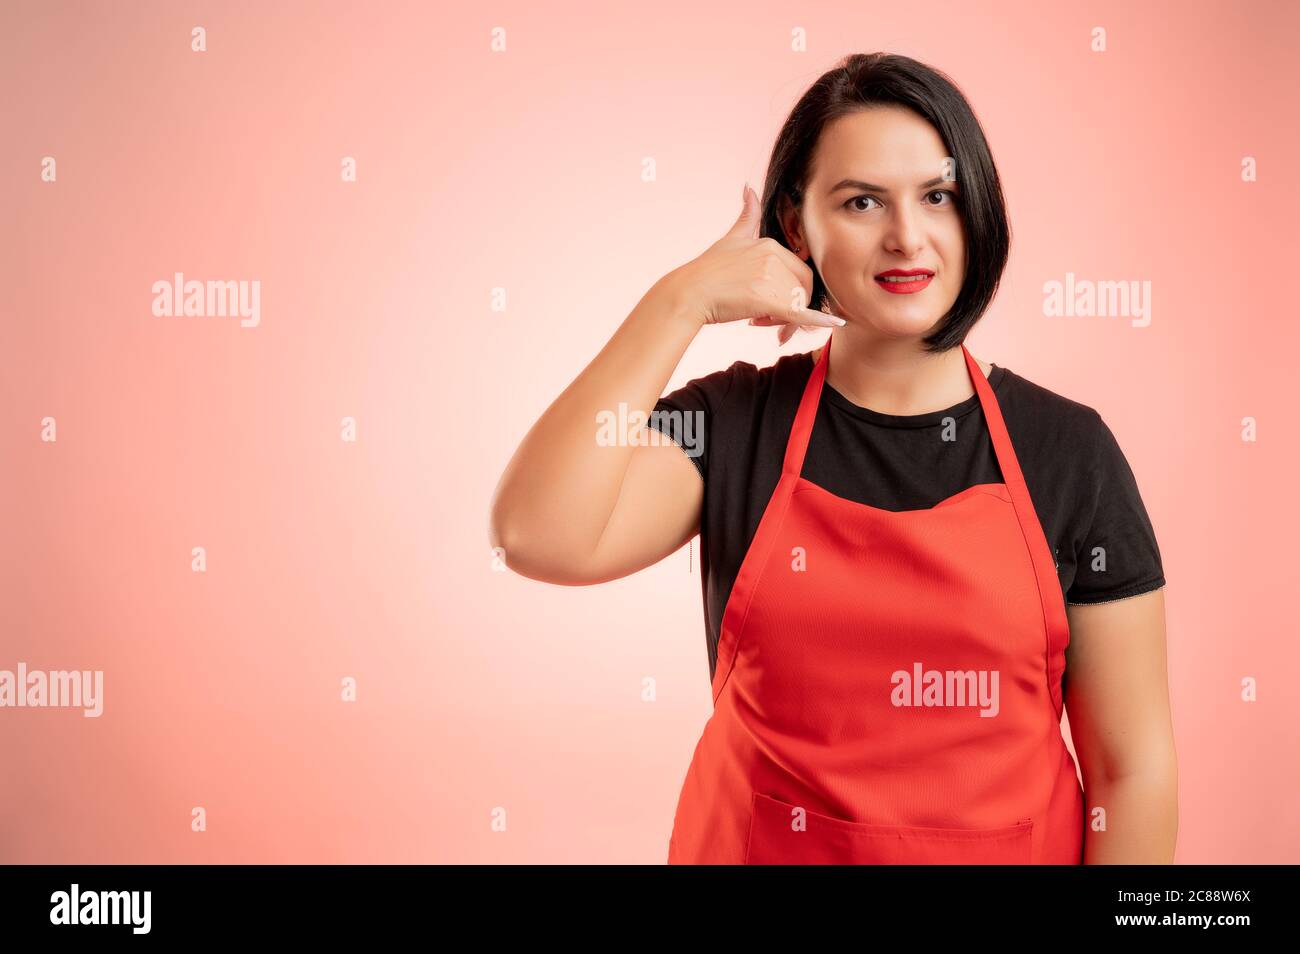 Frau im Supermarkt mit roter Schürze und schwarzem T-Shirt beschäftigt, zeigt Call me Geste isoliert auf rotem Hintergrund Stockfoto